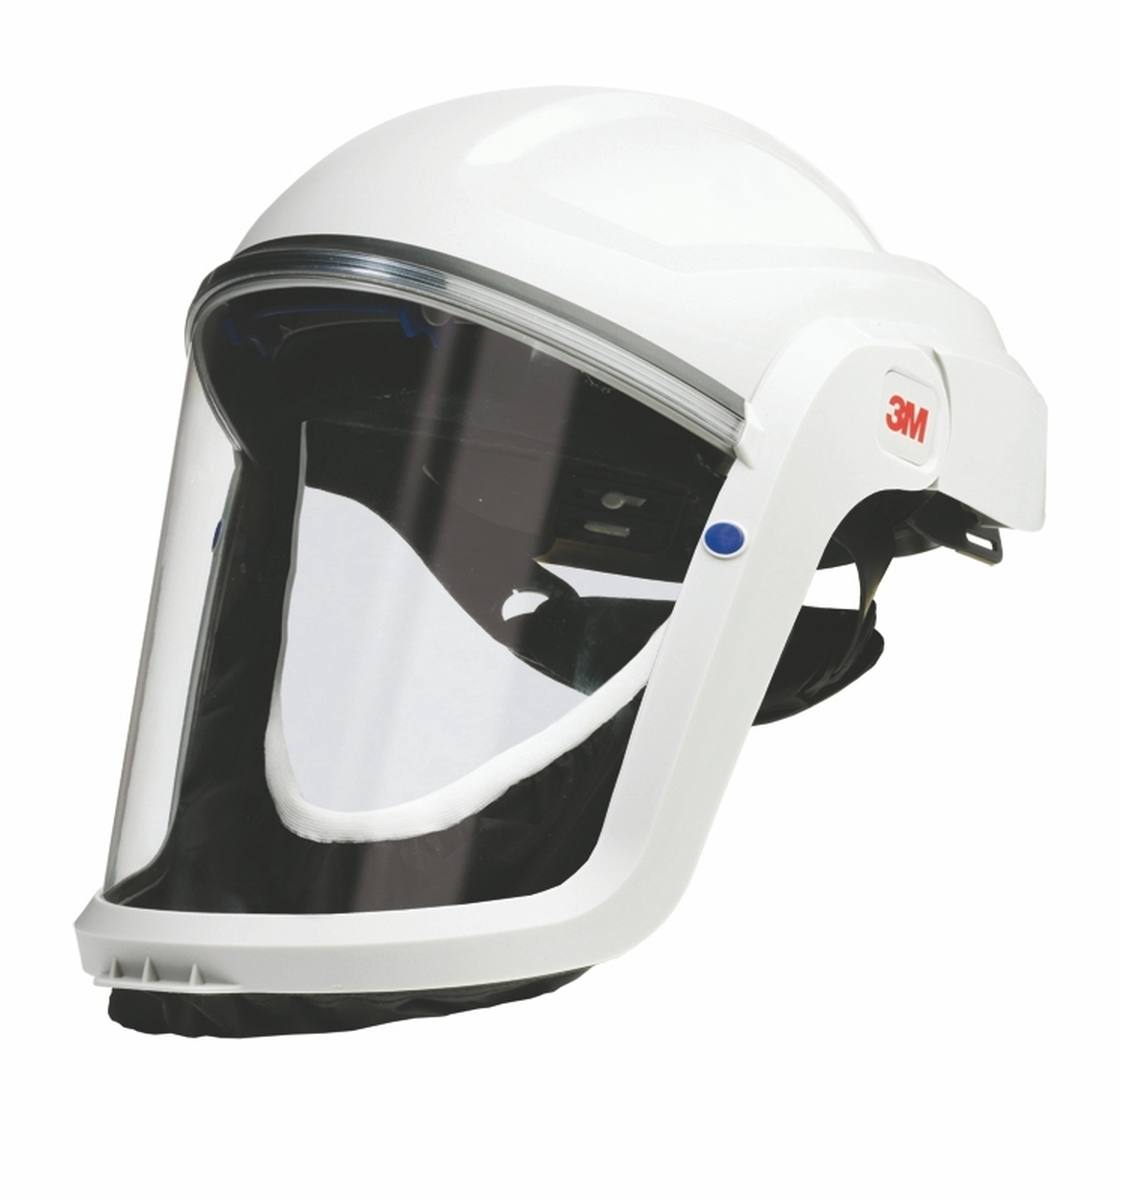 Casco de seguridad 3M Versaflo M207 con junta facial ignífuga y visor de policarbonato, transparente